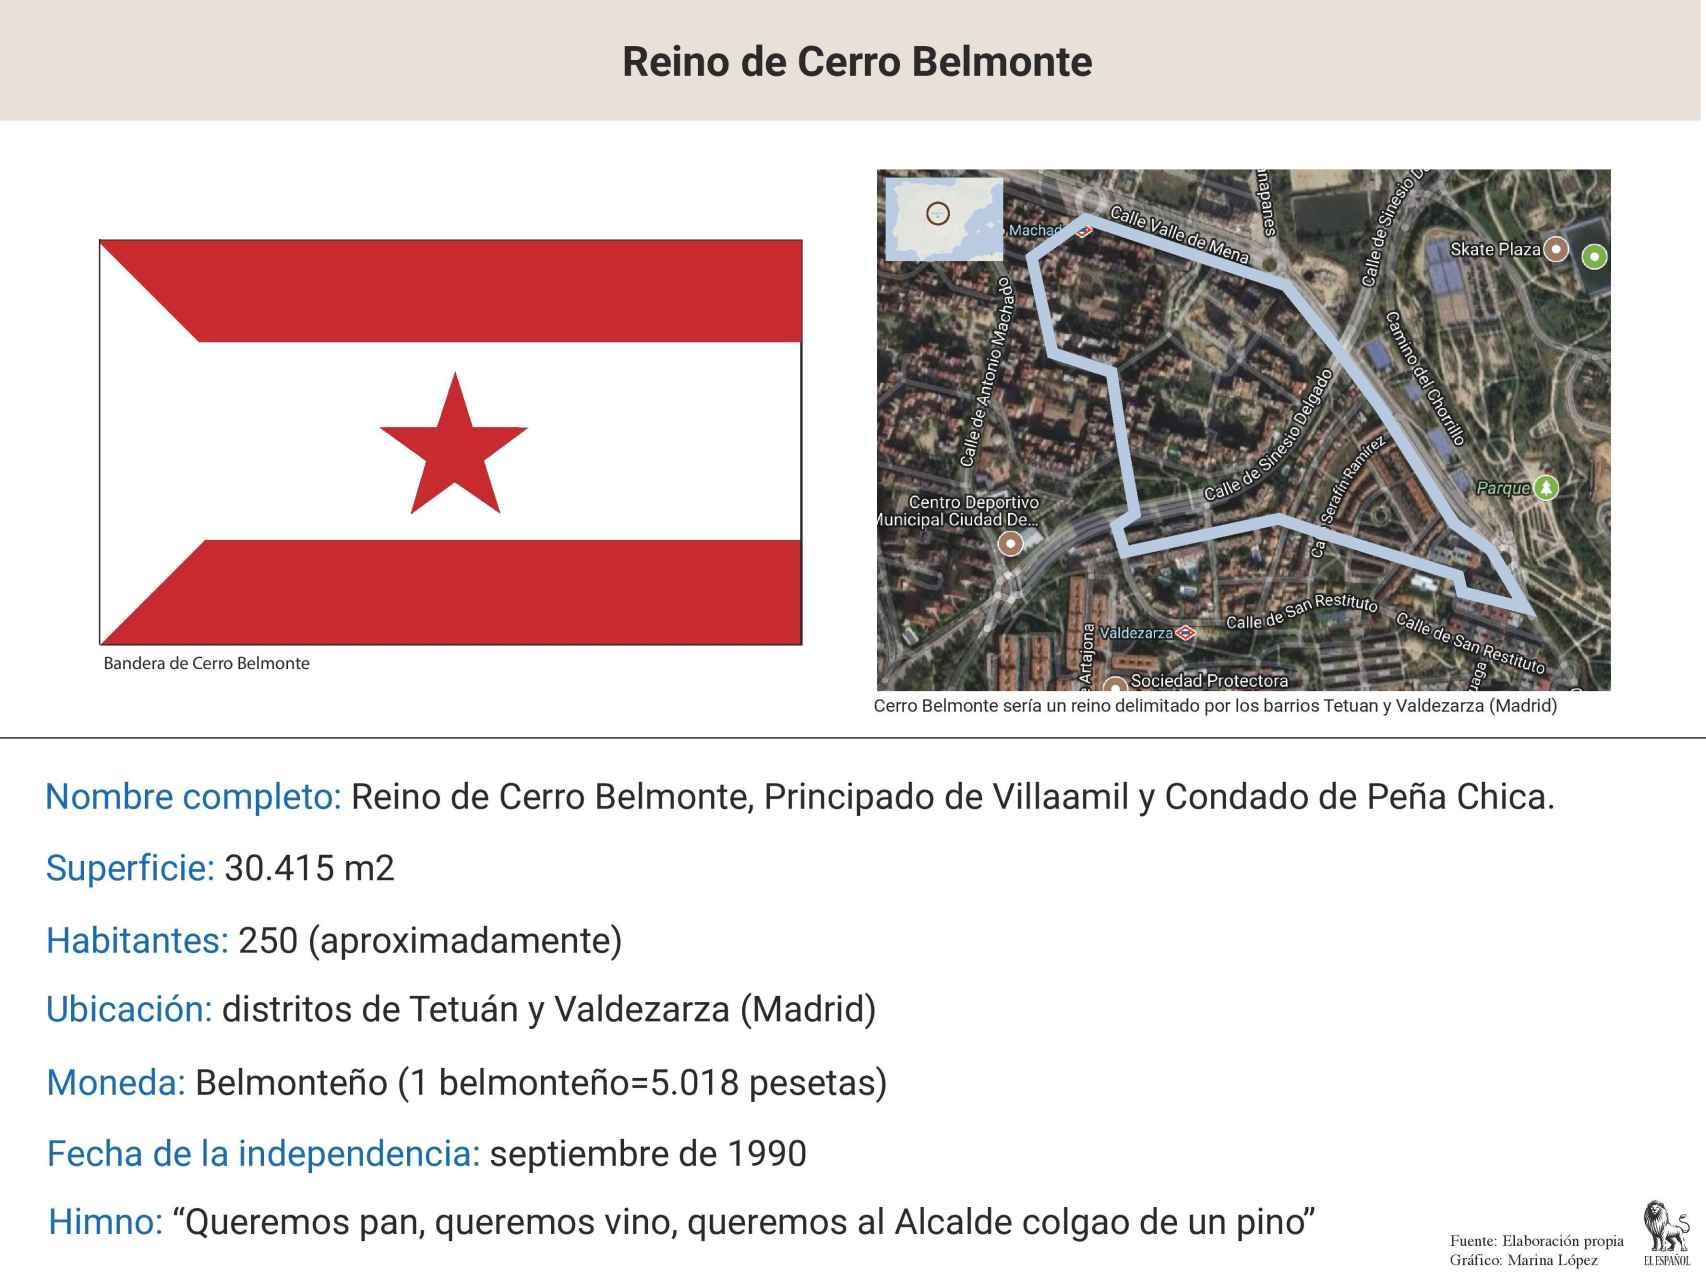 Ficha nacional de Cerro Belmonte, con datos, mapa y bandera